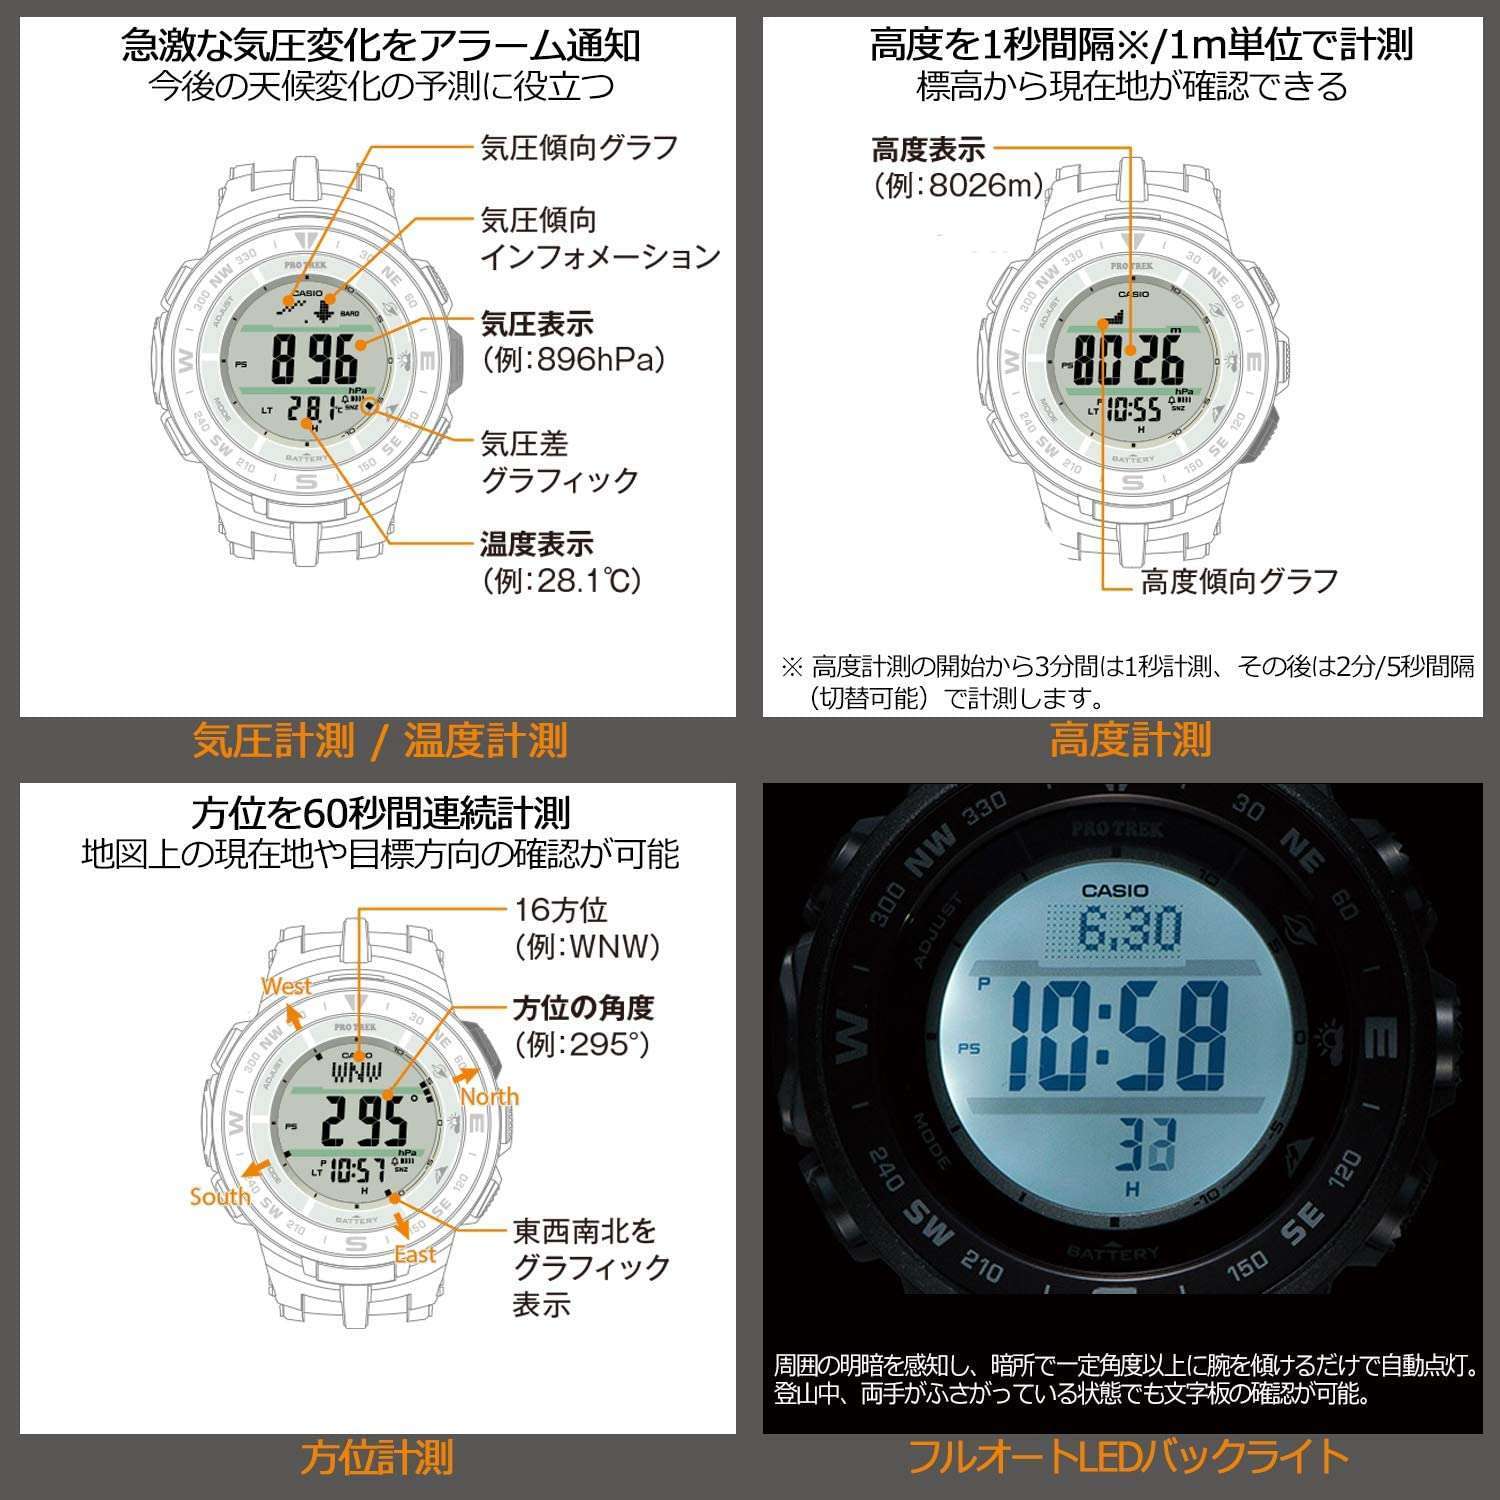 ROOK JAPAN:CASIO PROTREK JDM MEN WATCH PRG-330-9AJF,JDM Watch,Casio Protrek